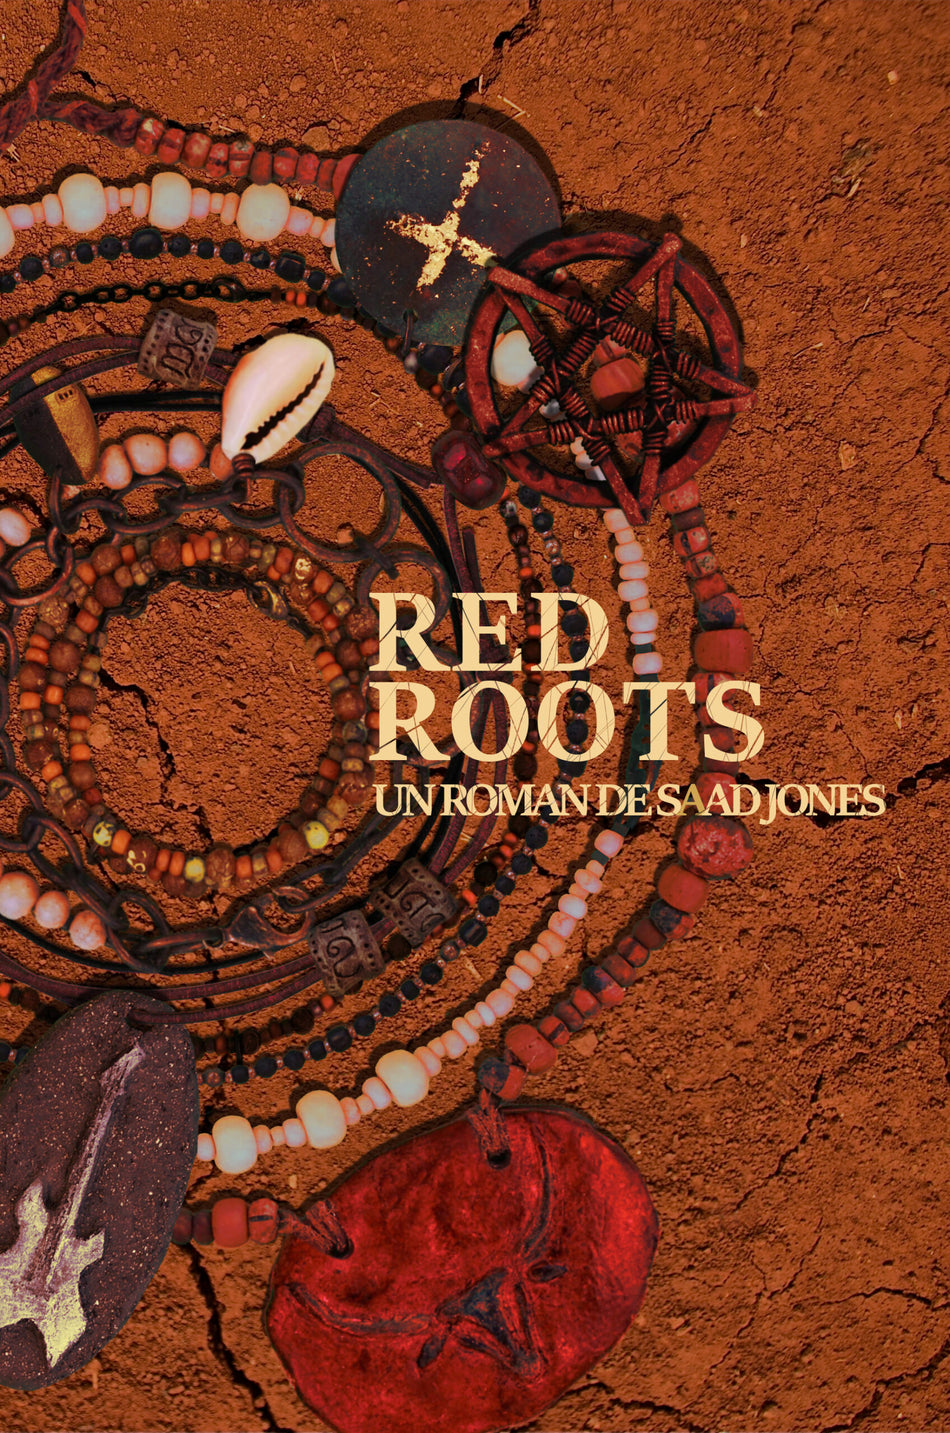 Red Roots by Saad Jones